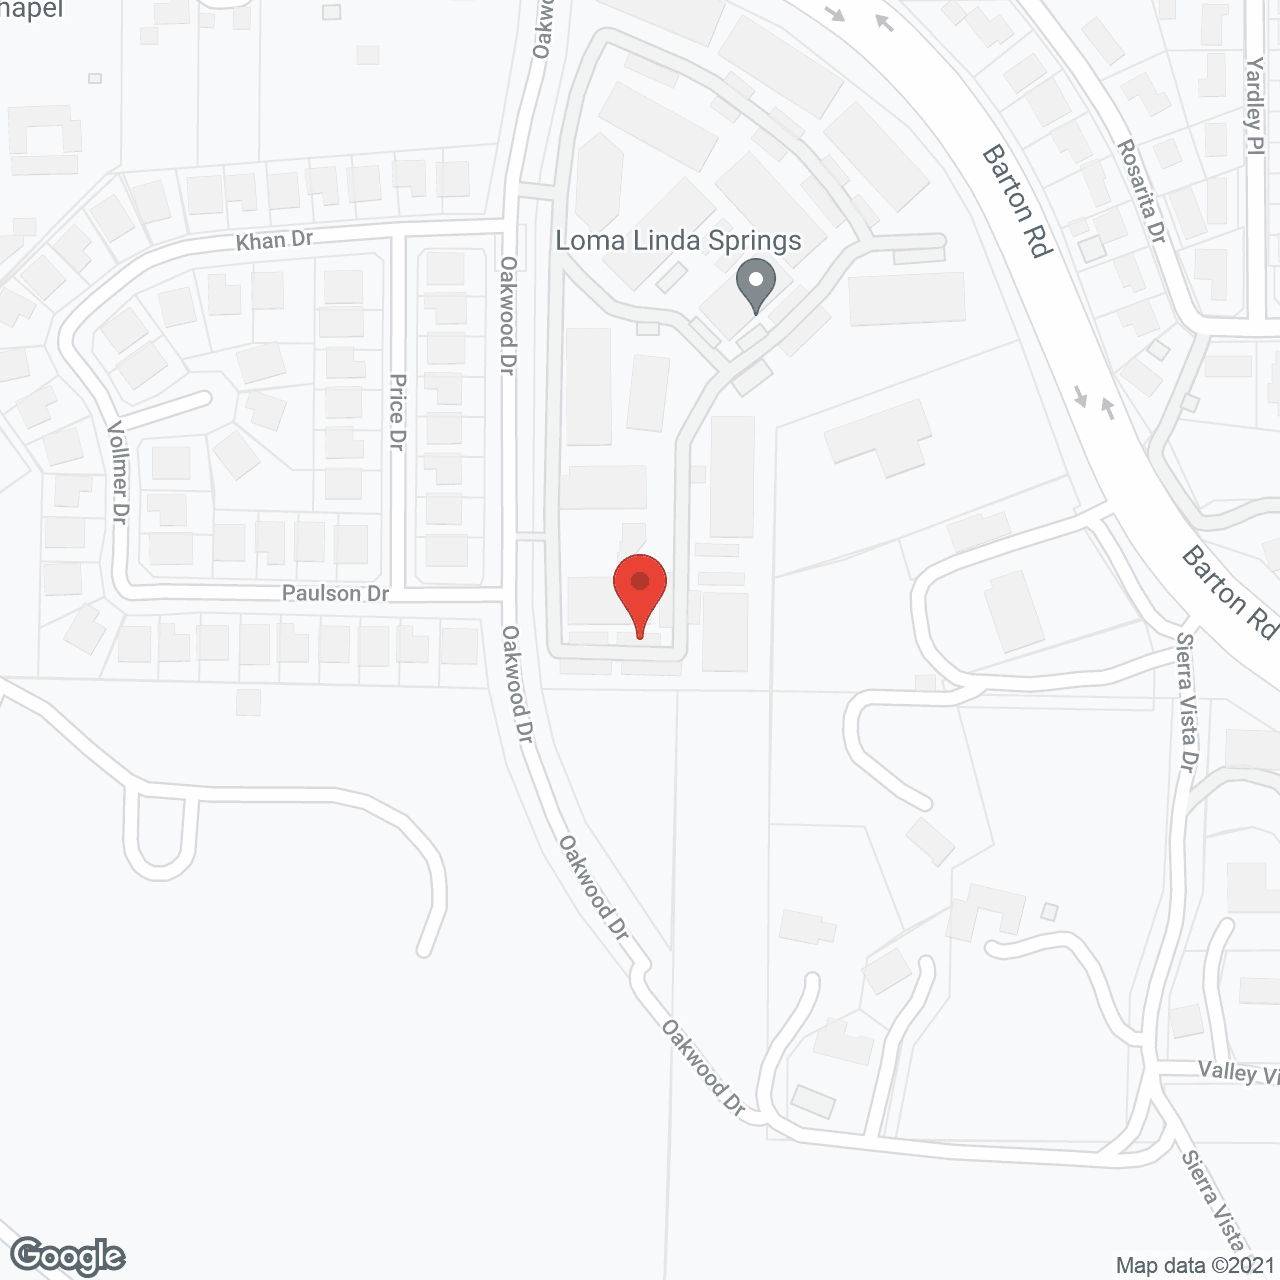 Loma Linda Springs in google map